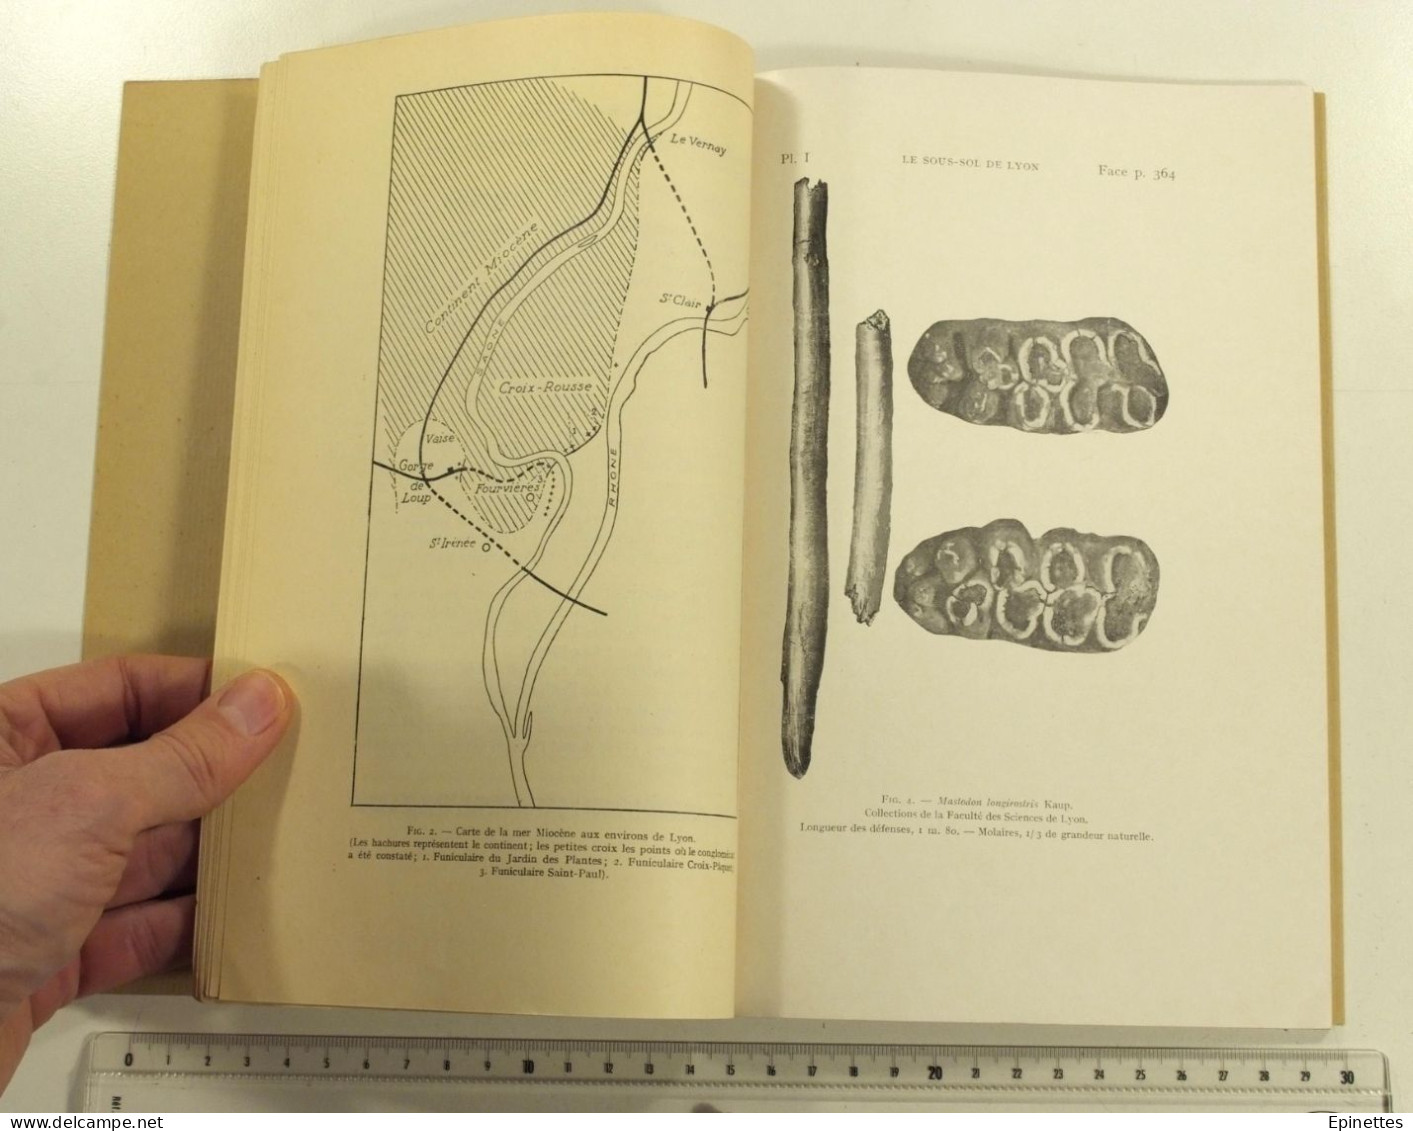 Nouvelles Observations sur le Sous-sol de la Ville de Lyon, F. Roman, Etudes Rhodaniennes 1931. Géologie, souterrains